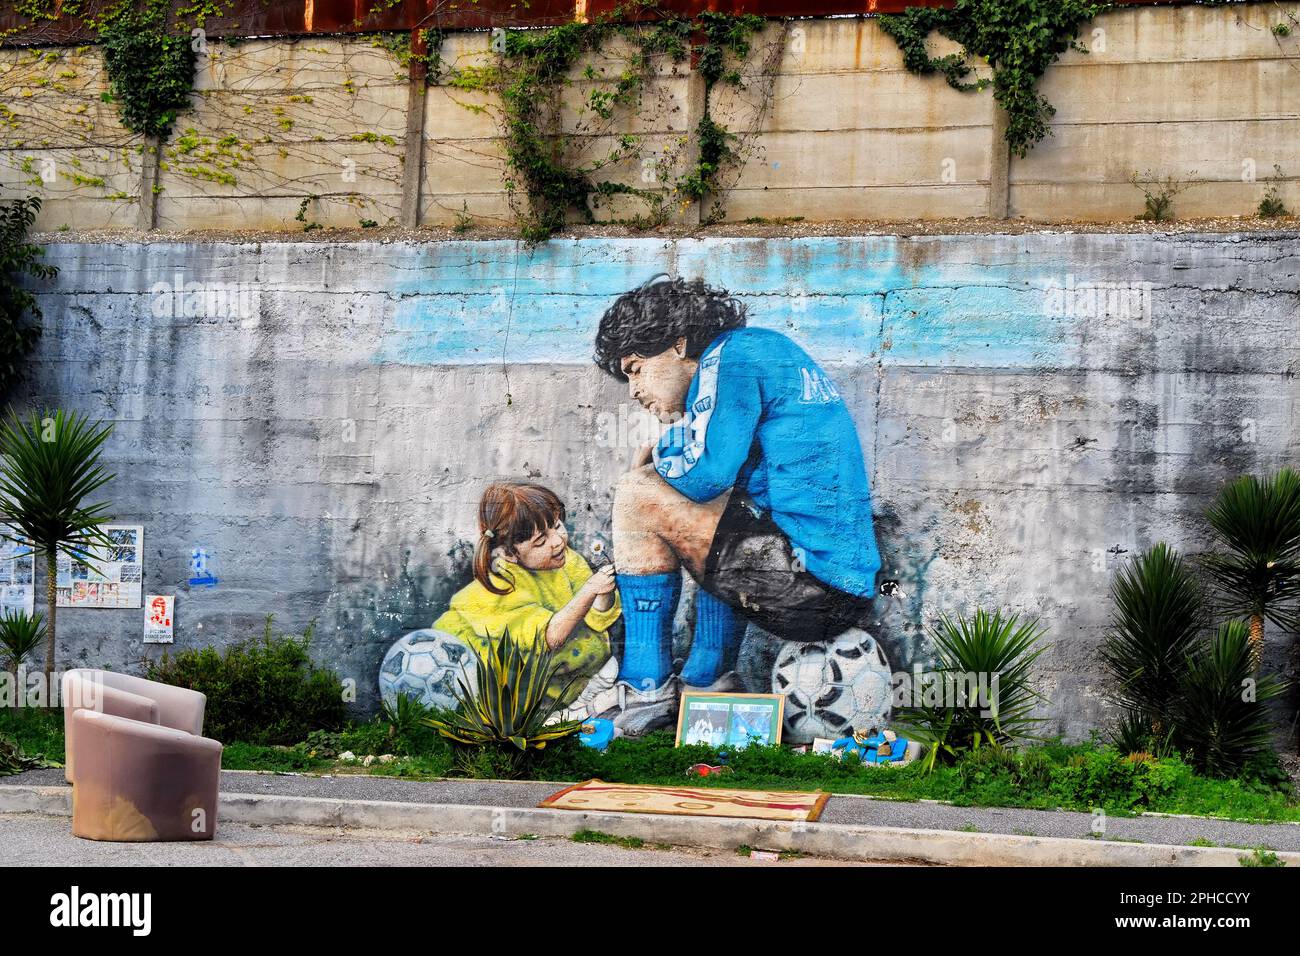 Un murale raffigurante Diego Armando Maradona ed è figlia Dalma è visto al di fuori dell'ex complesso sportivo SSC Napoli a Soccavo, un quartiere di Napoli (Italia) Foto Stock